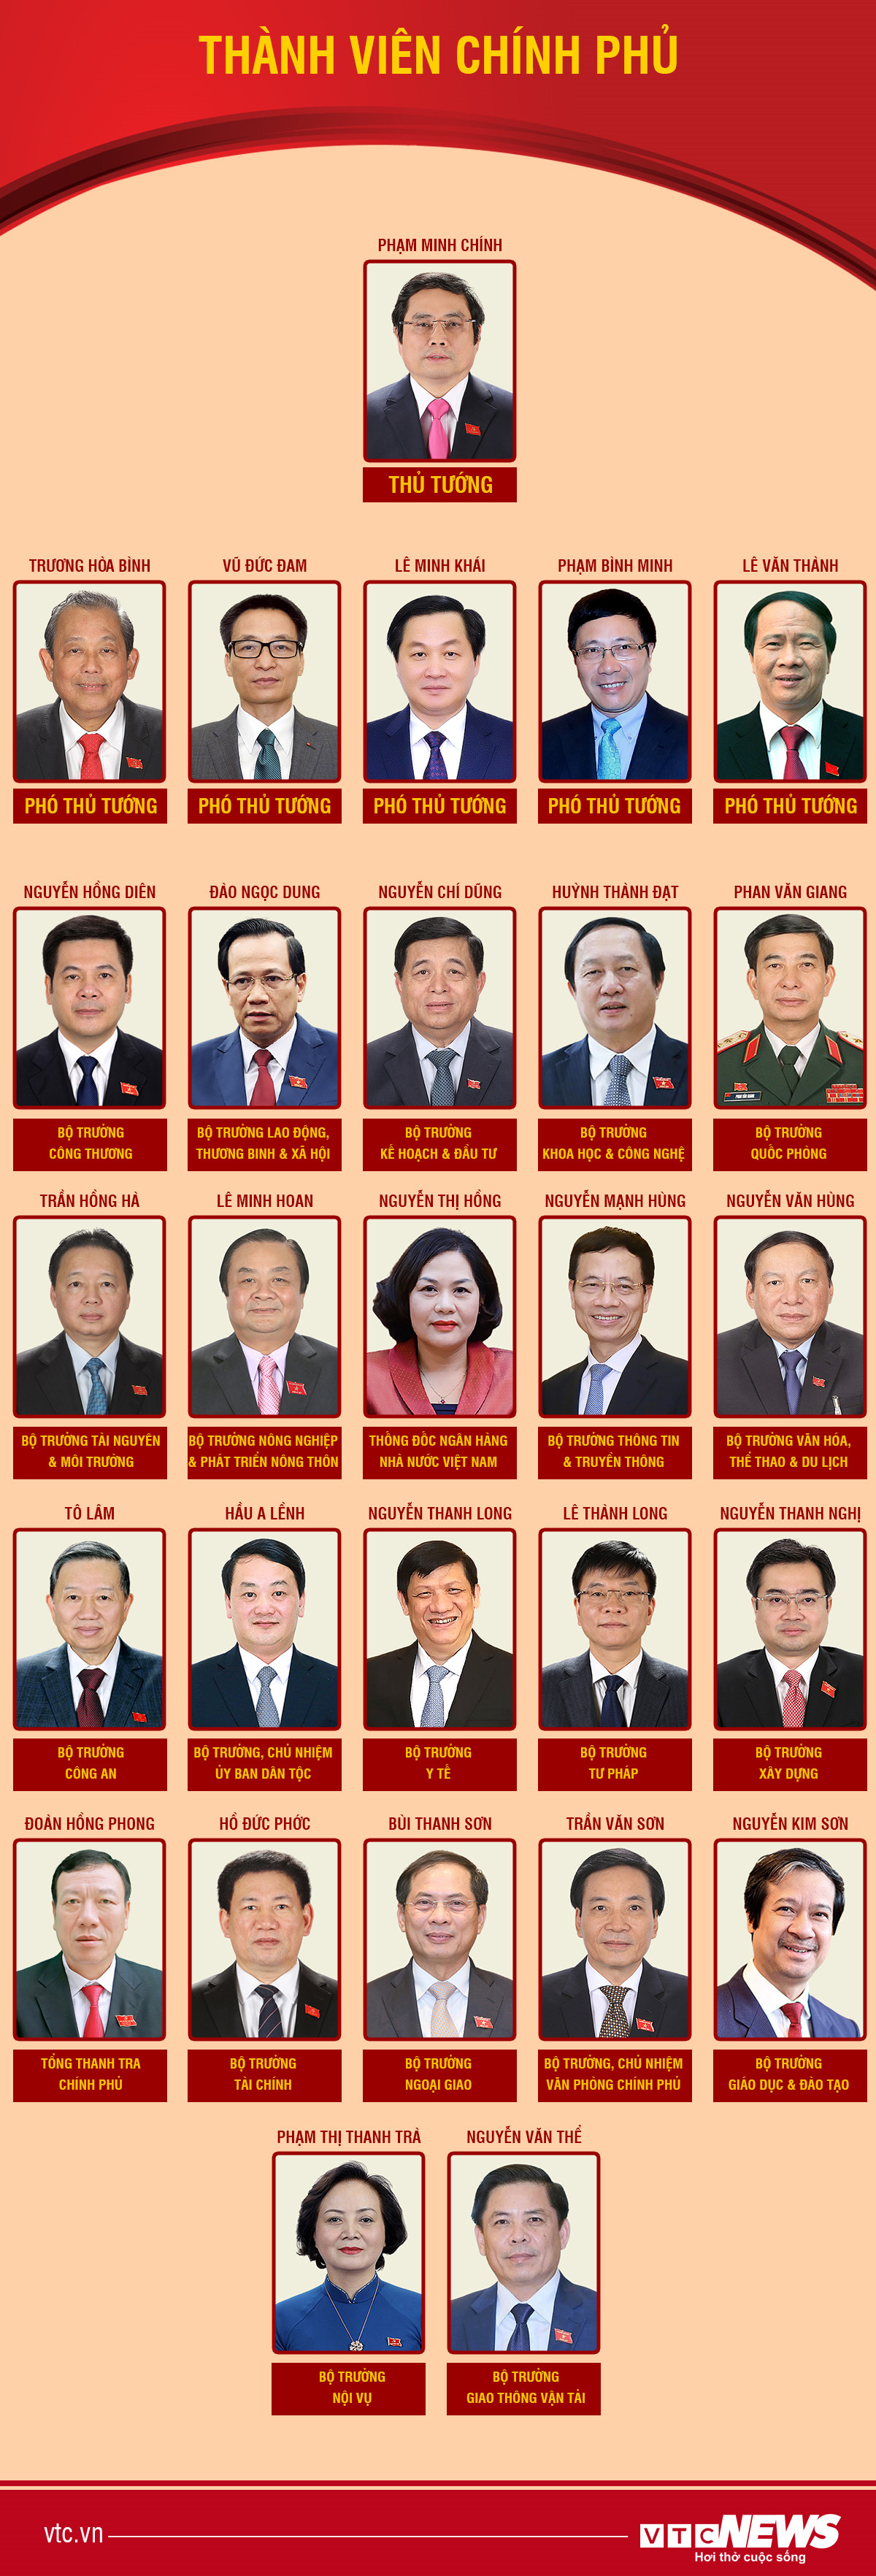 Infographic: Danh sách 28 thành viên Chính phủ sau kiện toàn - 1